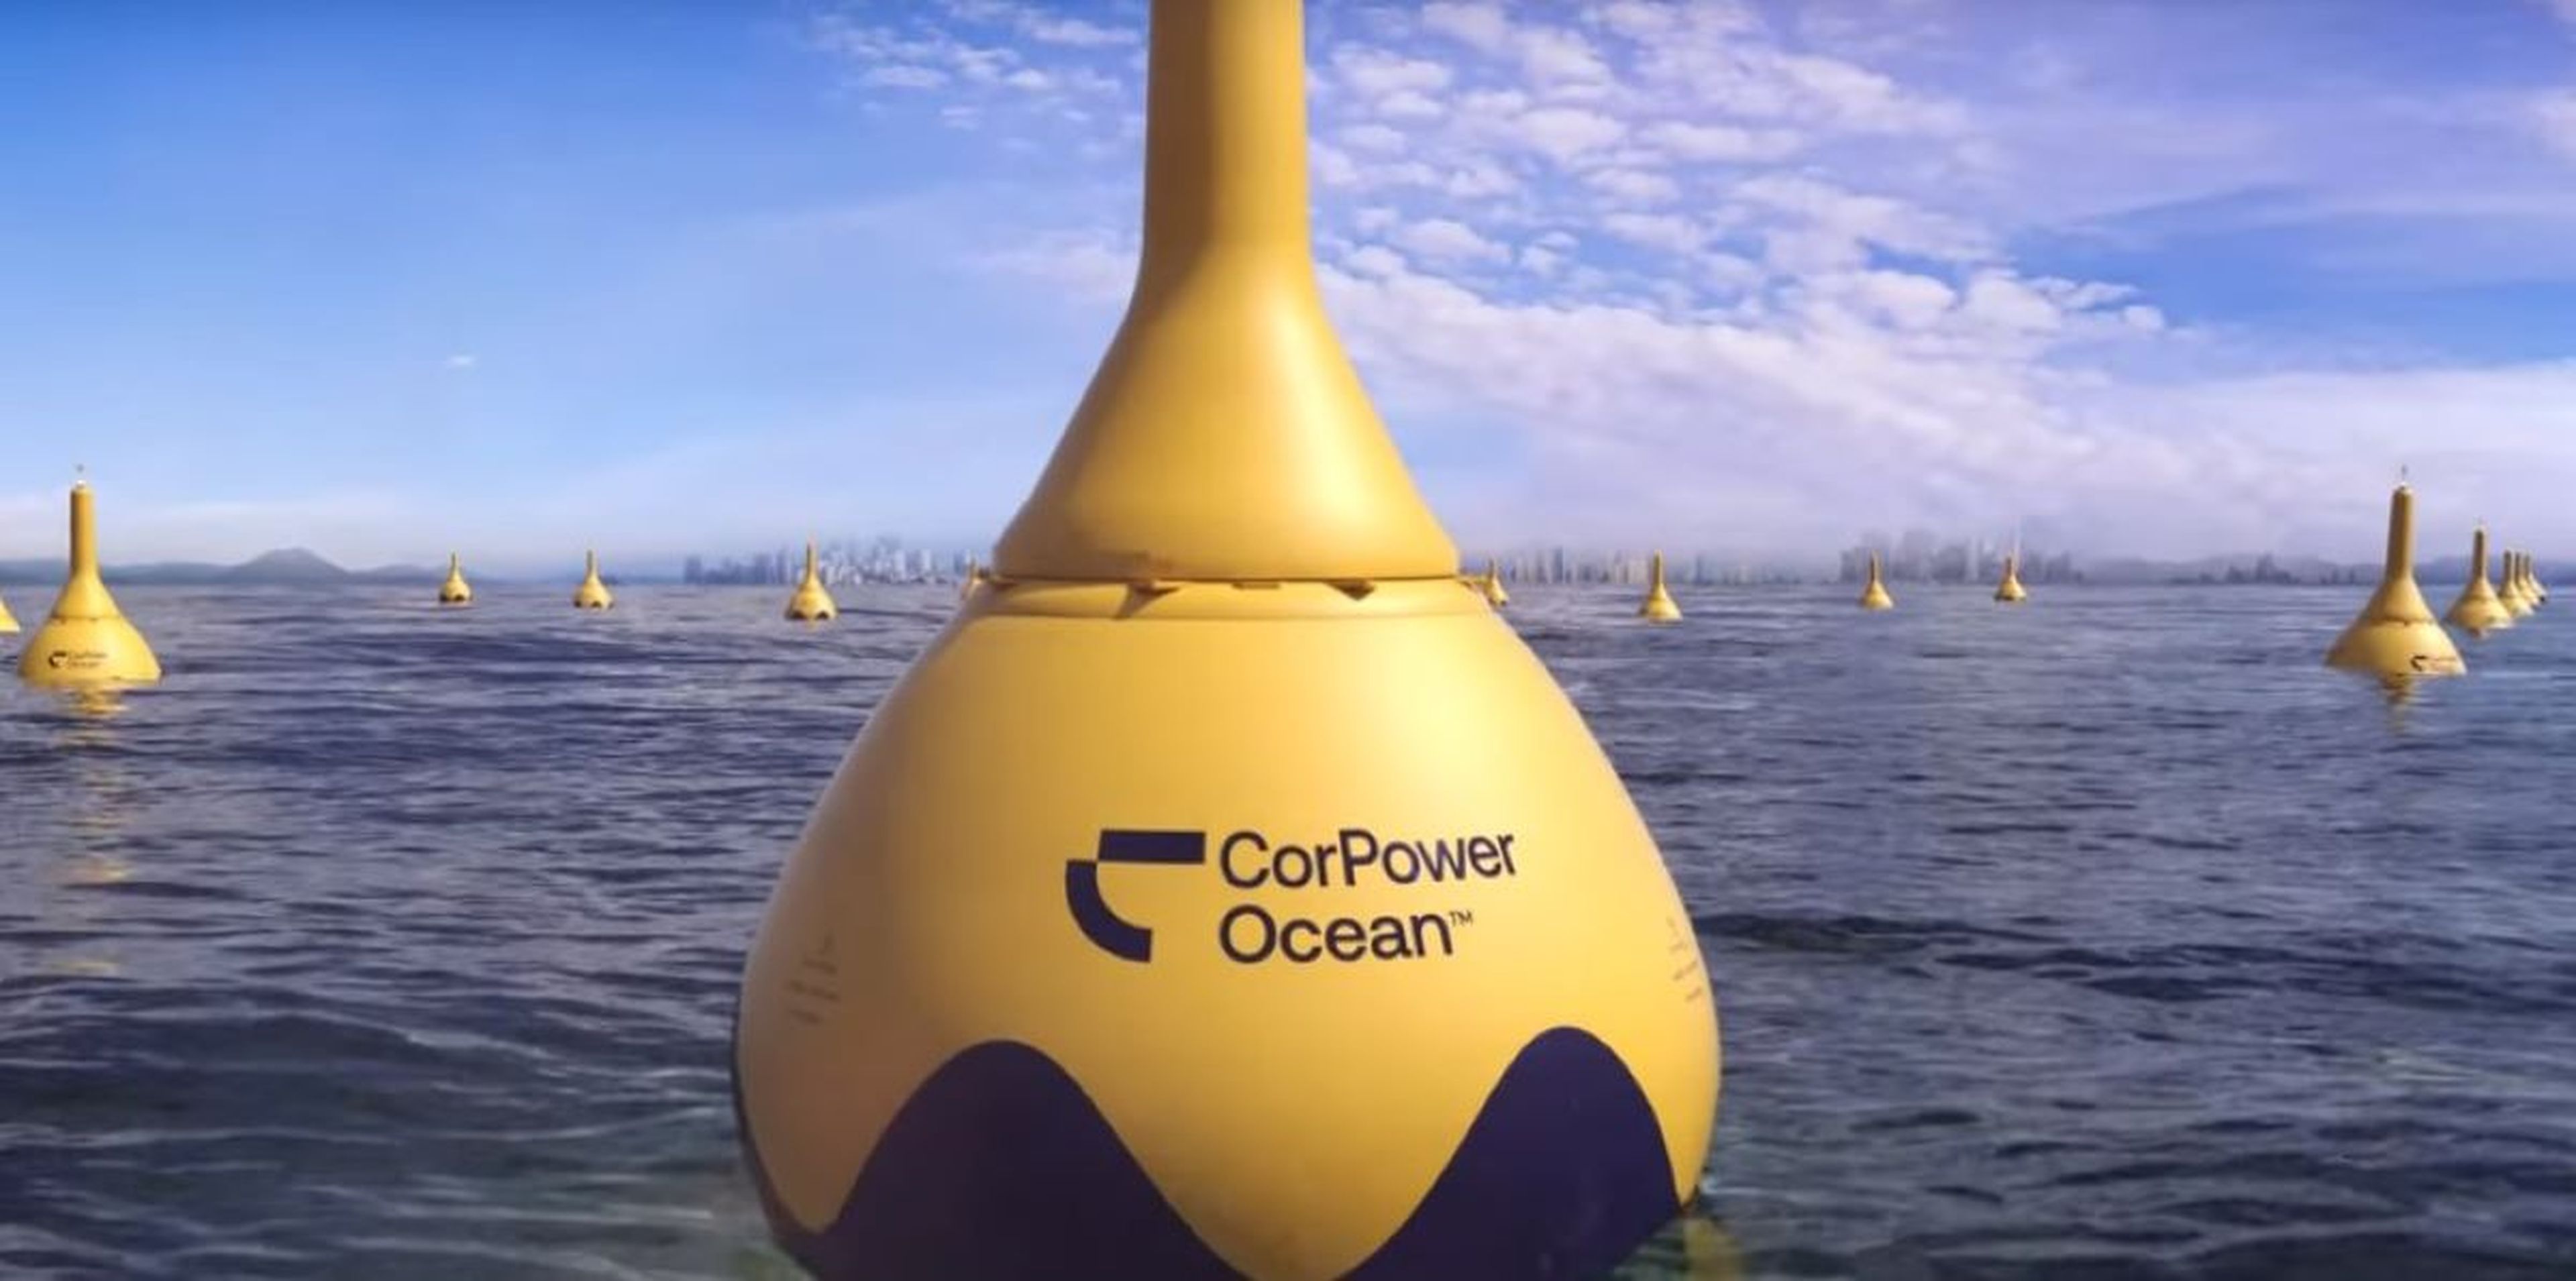 La boya de CorPorwer Ocean que aprovecha el oleaje para producir energía